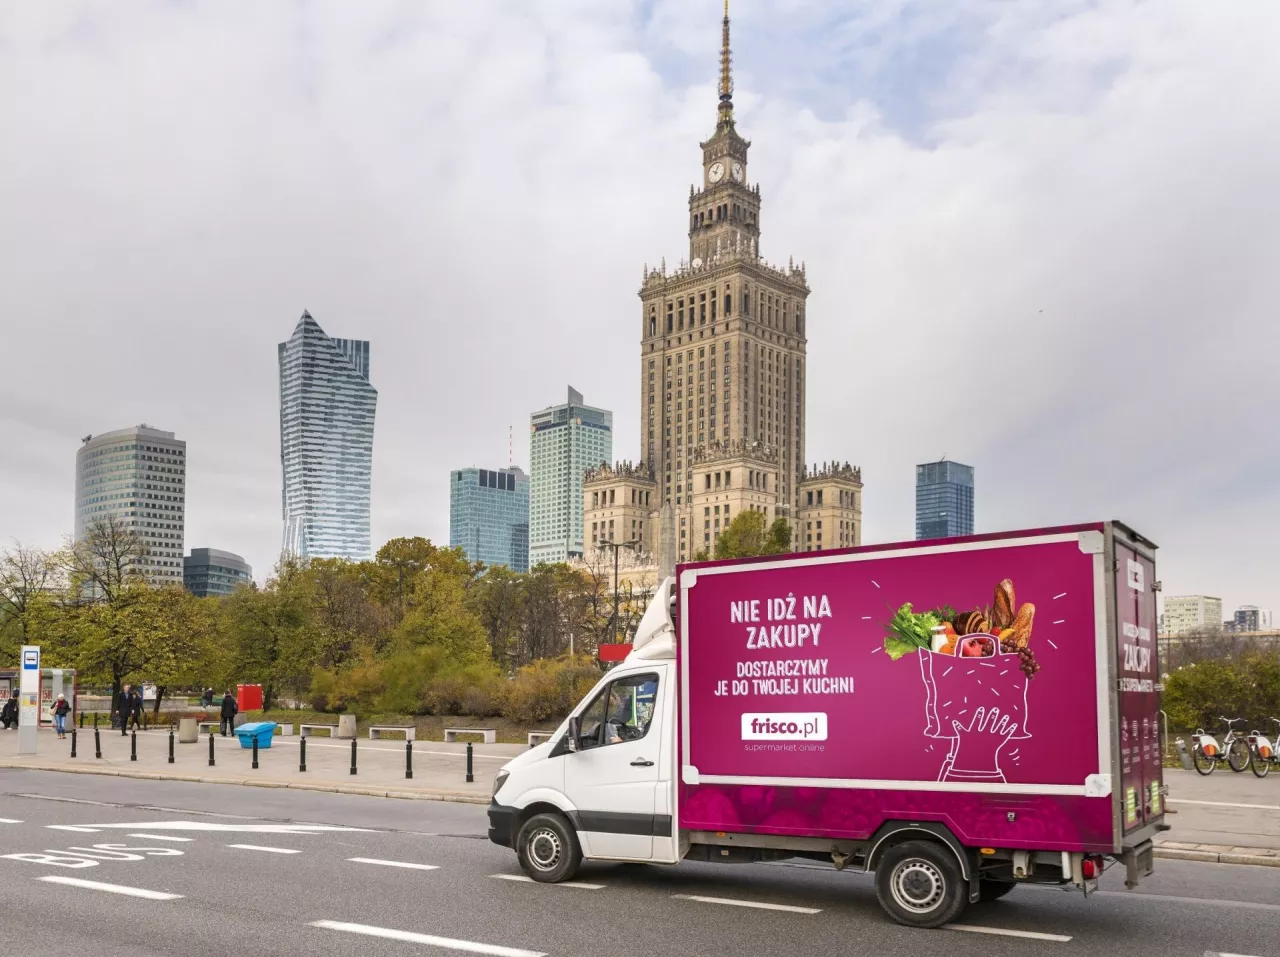 Frisco chce lepiej optymalizować trasy dostaw i namawia klientów, żeby mu w tym pomogli (Frisco.pl)